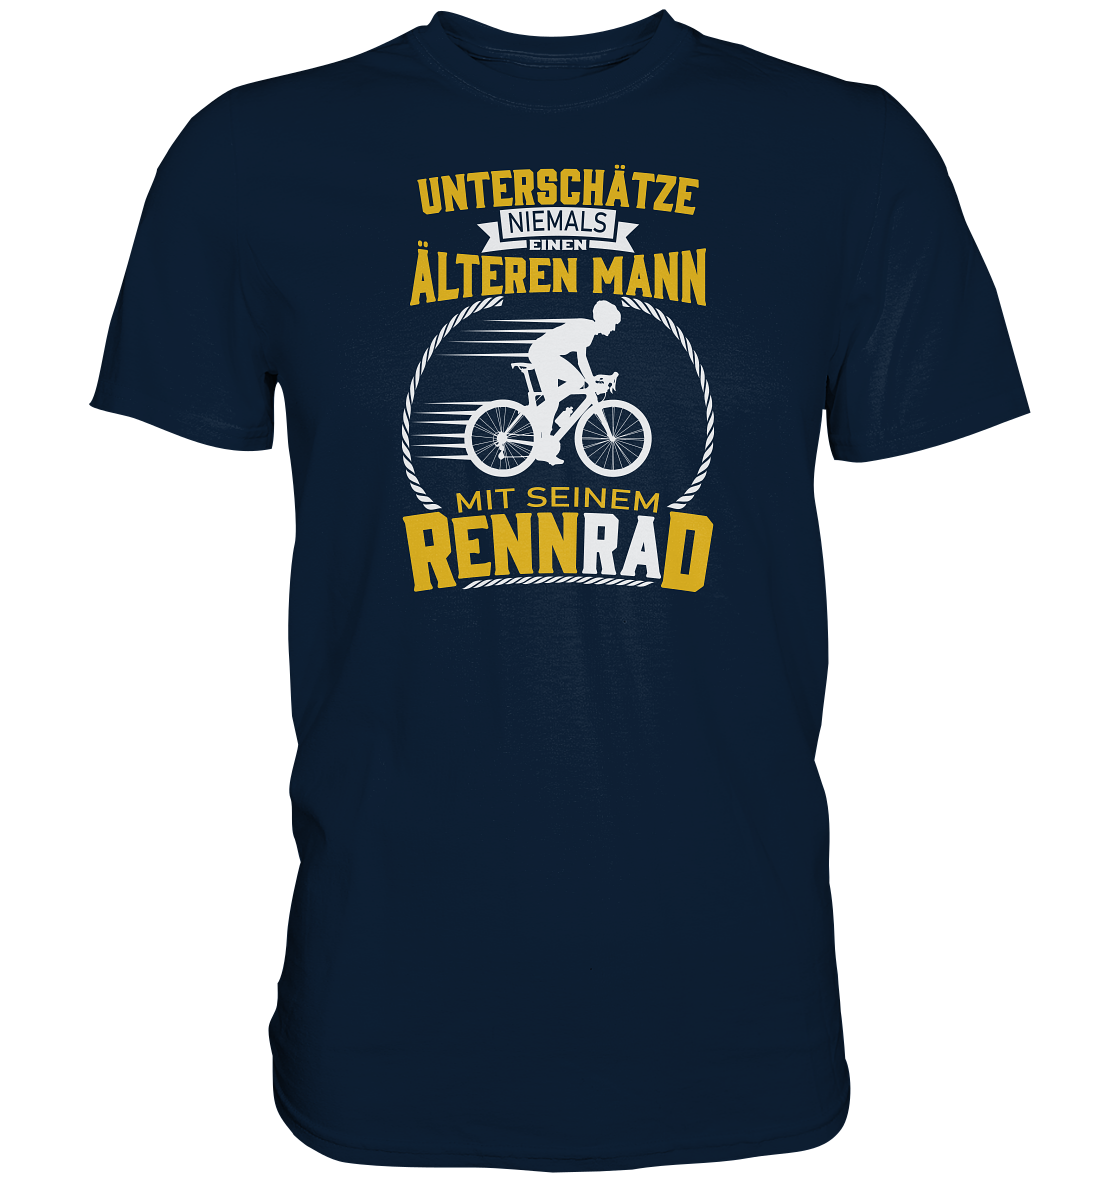 Unterschätze niemals einen älteren Mann mit seinem Rennrad. - Premium unisex Shirt